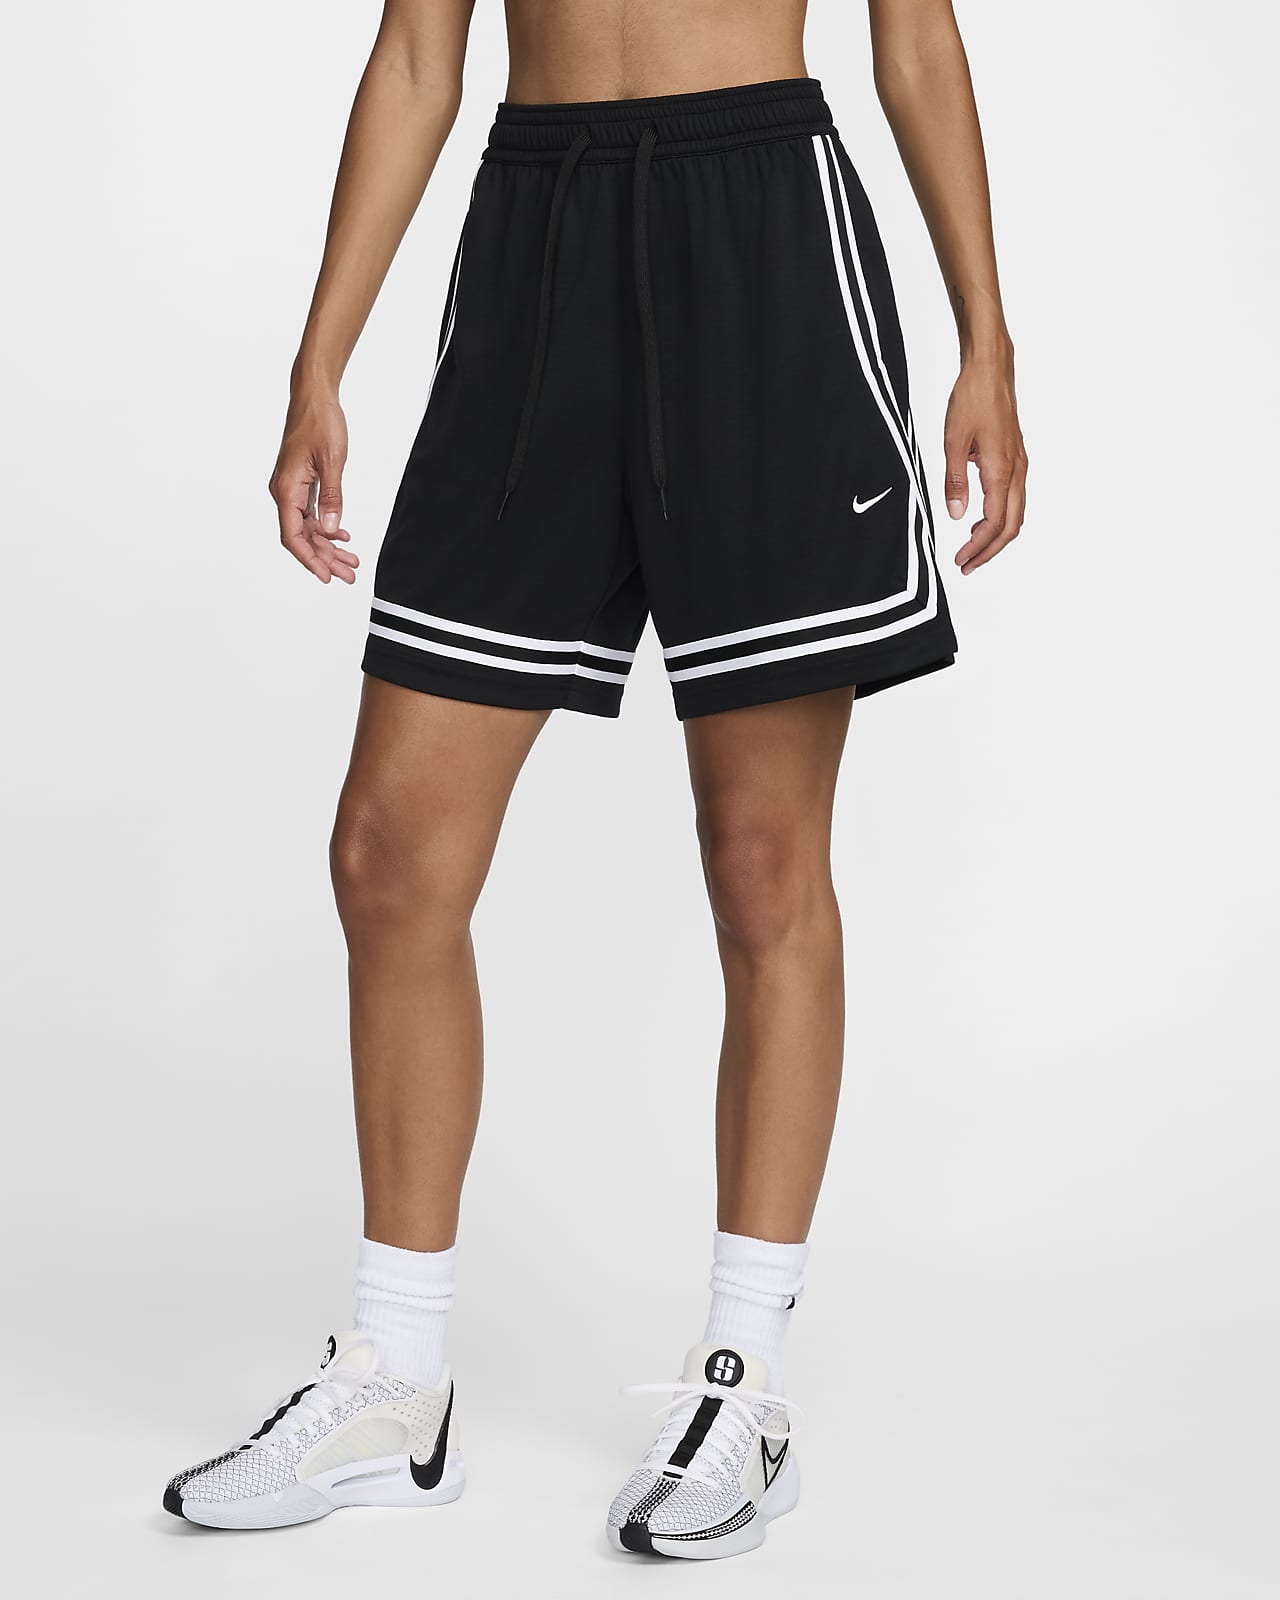 Short de basket Dri-FIT 18 cm Nike Crossover pour femme